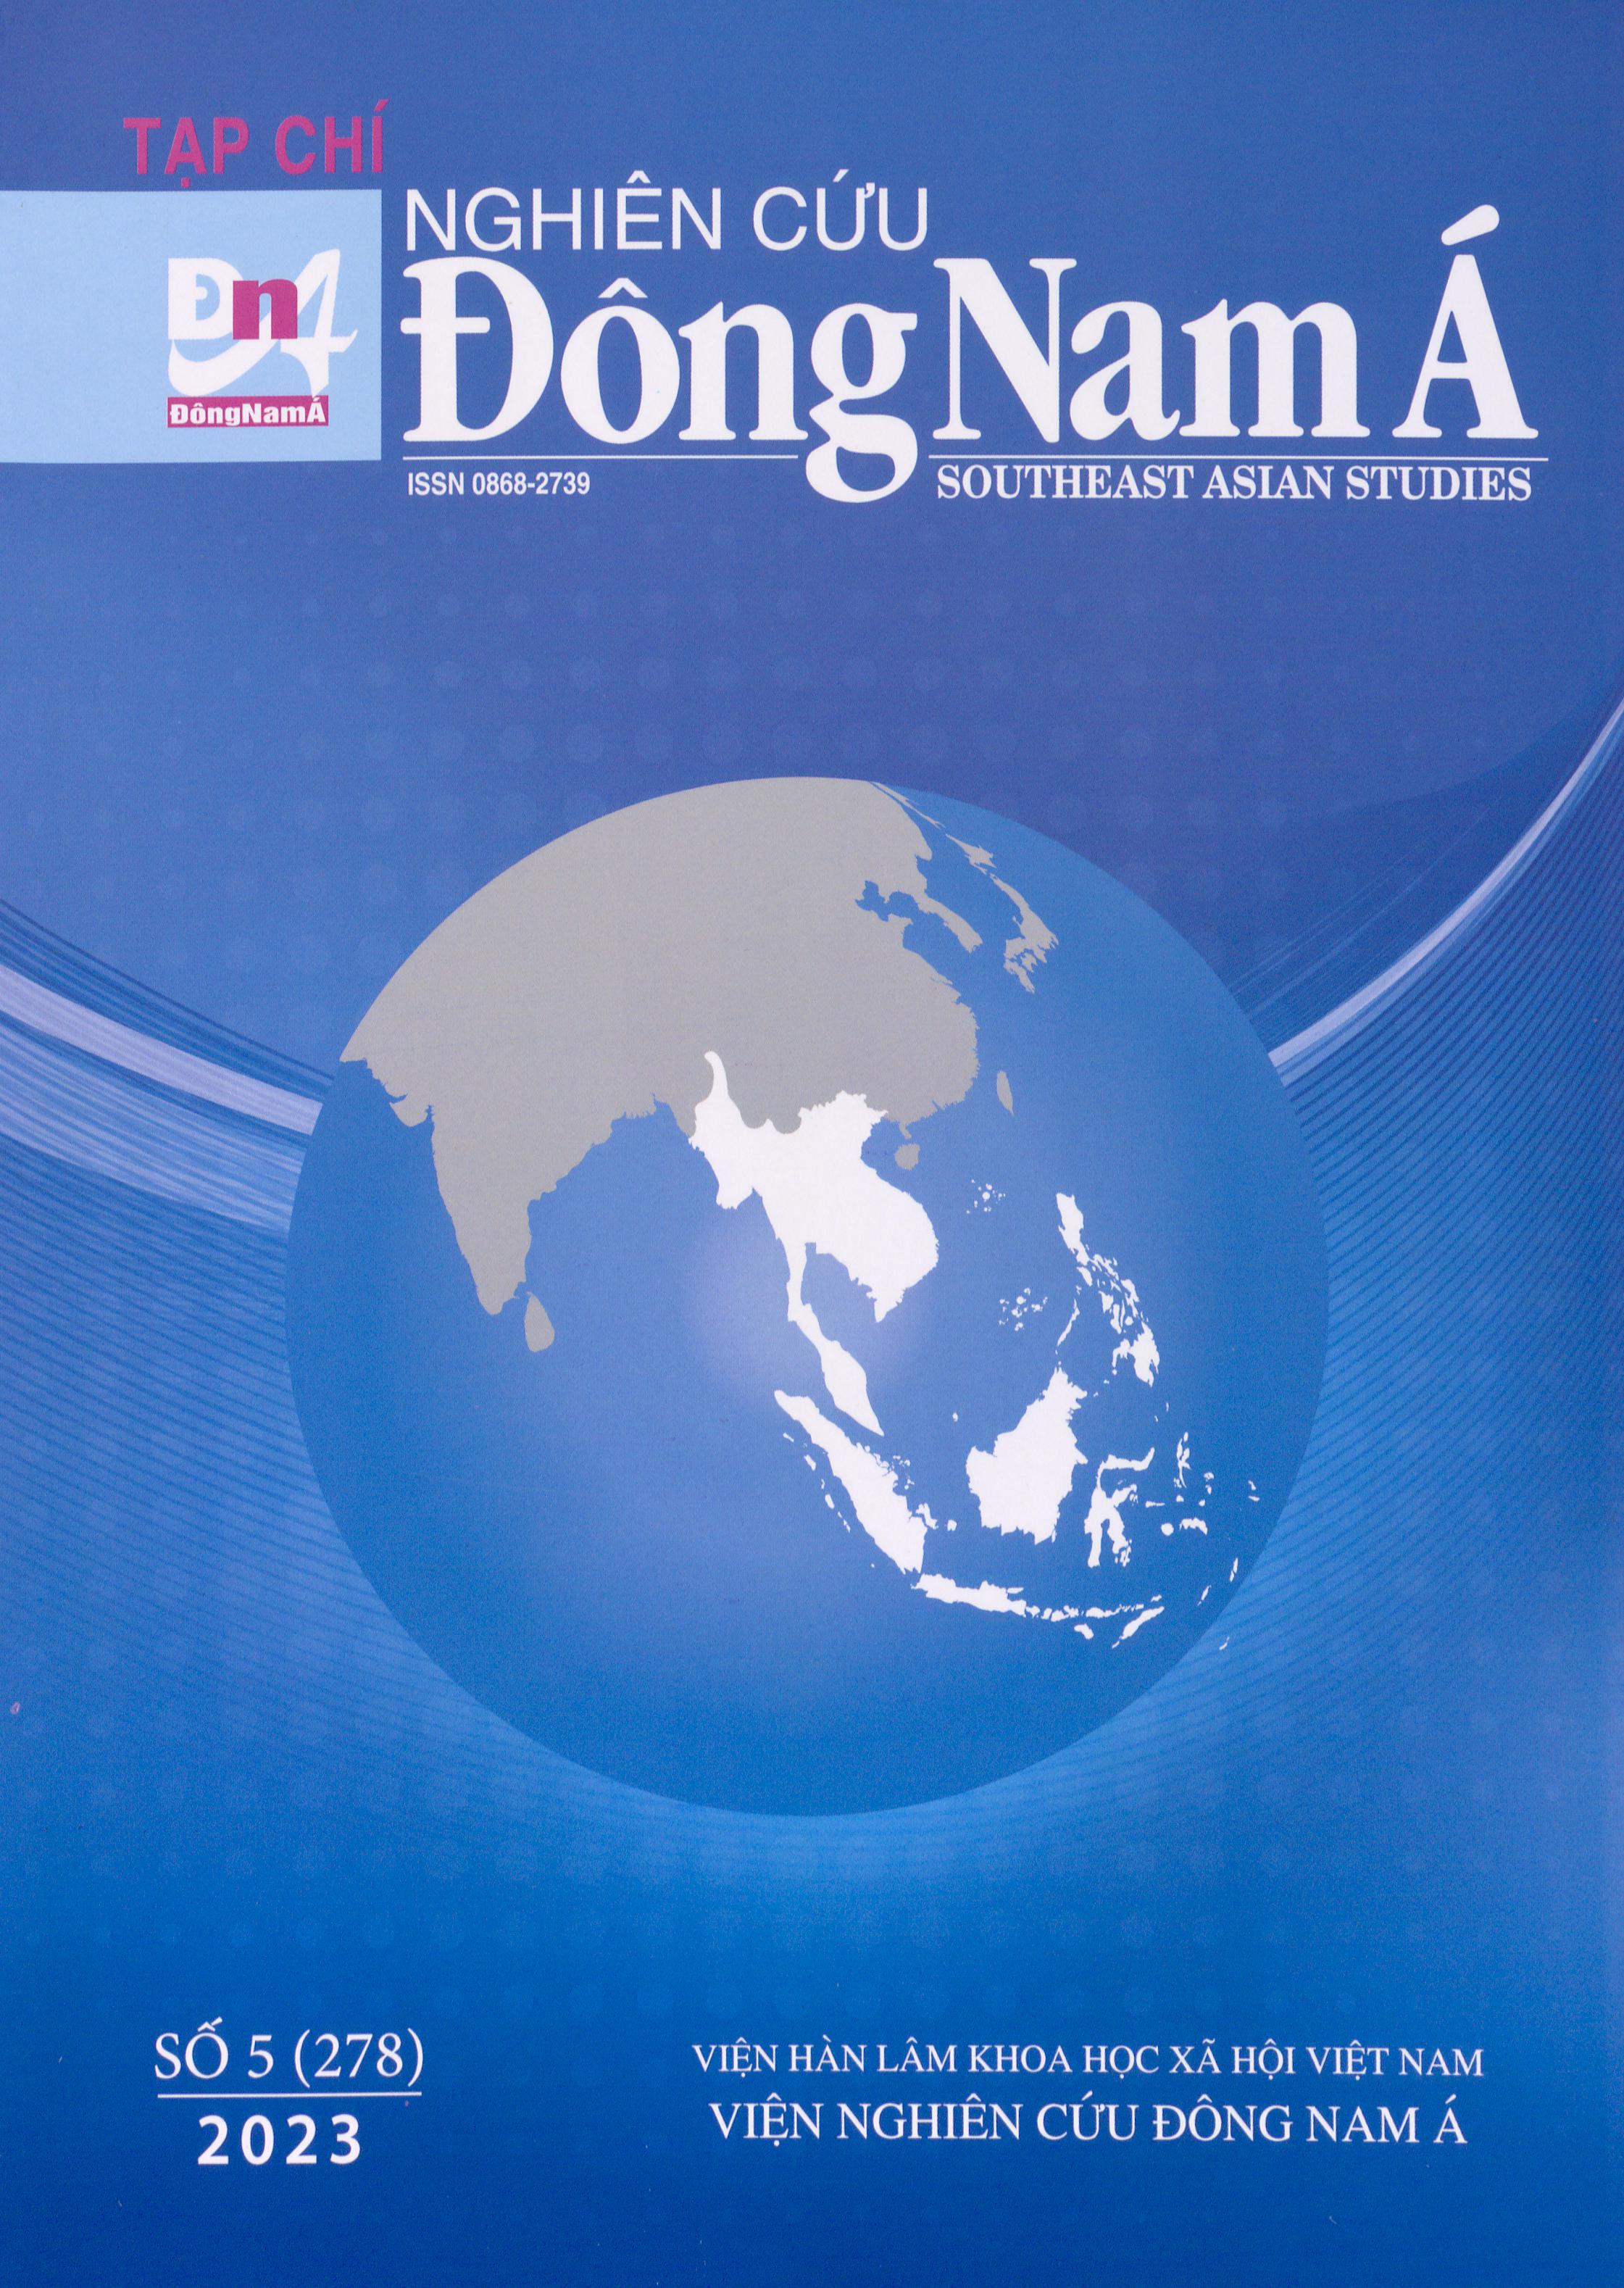 Tạp chí Nghiên cứu Đông Nam Á, số 5 năm 2023